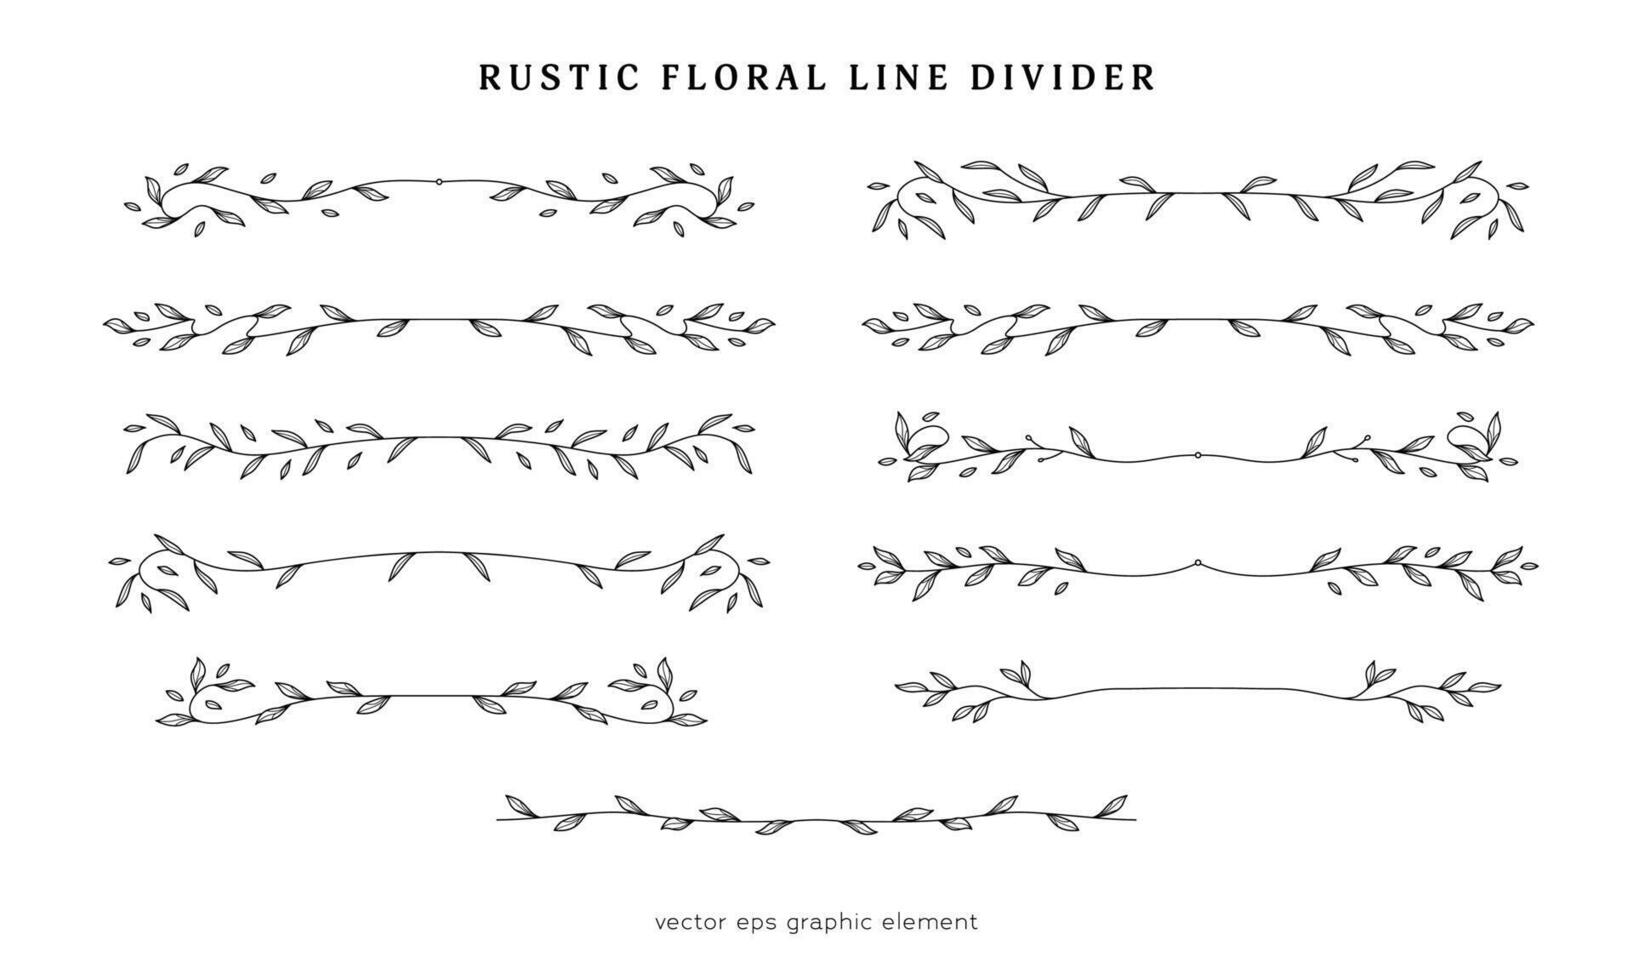 collezione di decorativo rustico floreale linea divisore per pagina disposizione separatore vettore decorazione elemento, rustico foglia ramo linea divisore